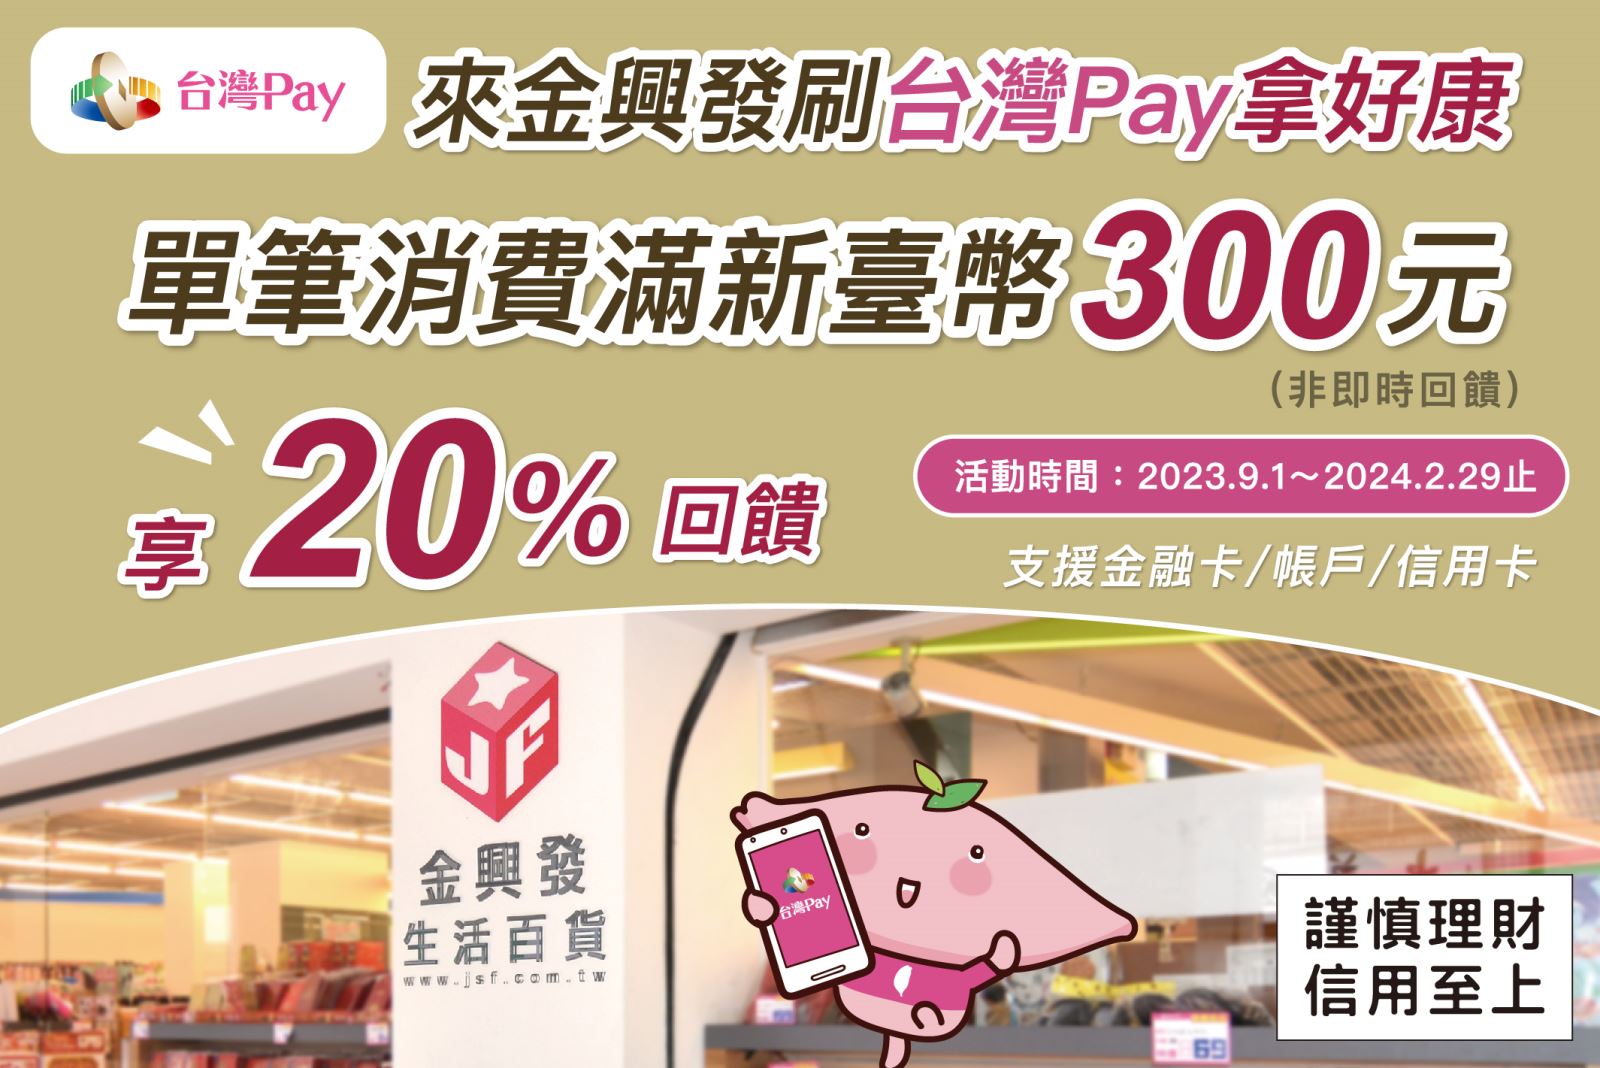 用戶於活動期間至活動地點，出示「台灣Pay」付款條碼進行支付，單筆消費滿新臺幣300元可享消費金額20%現金回饋